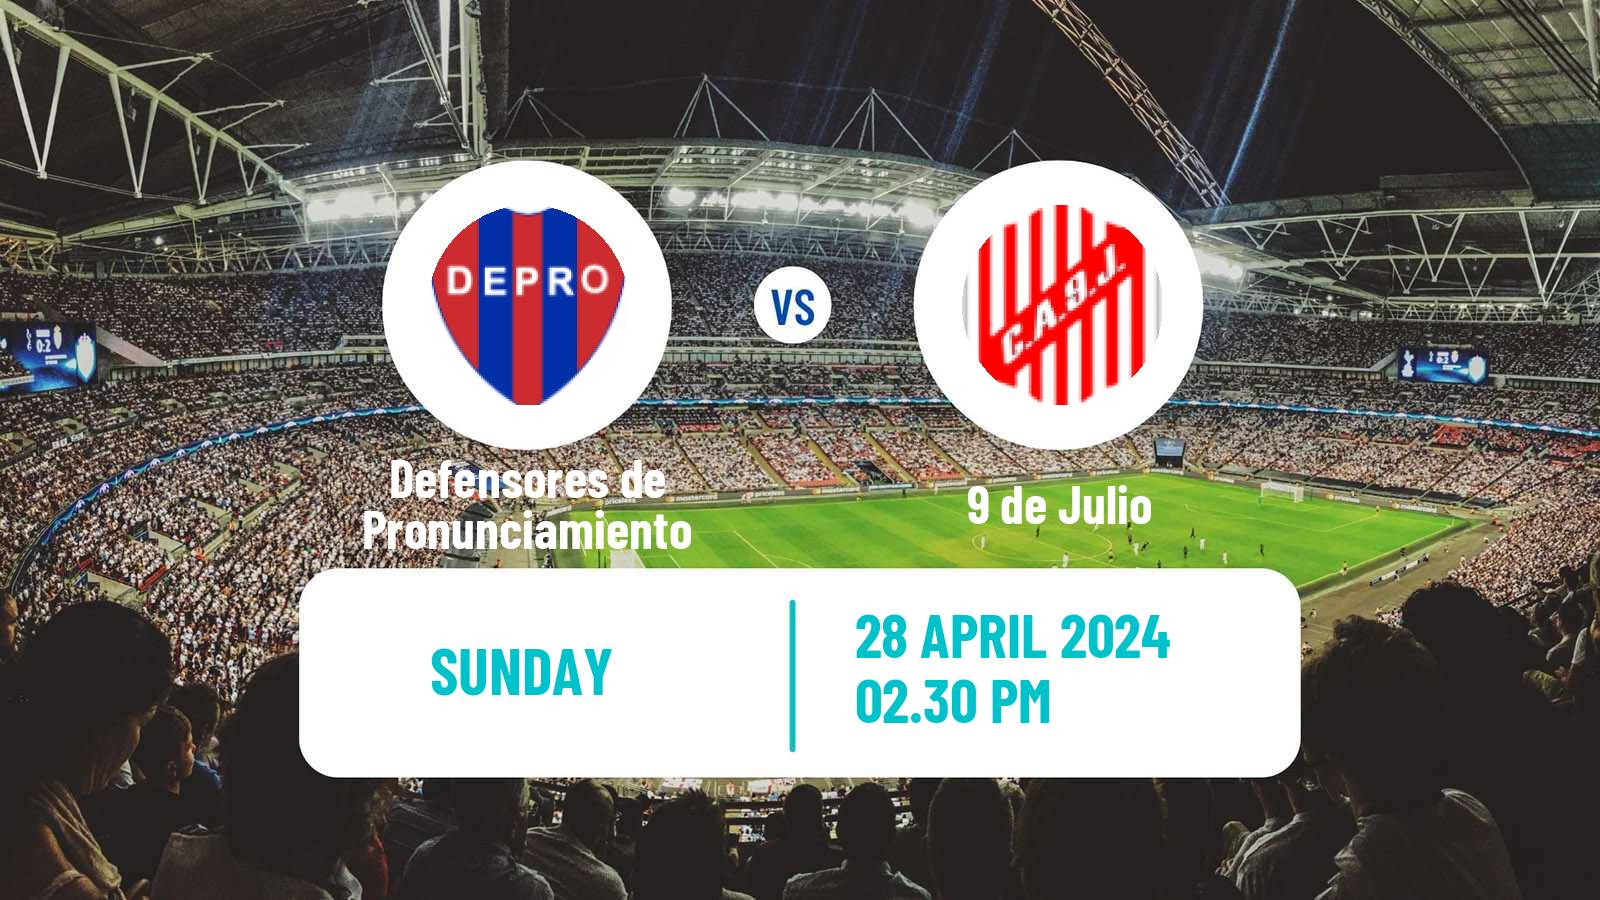 Soccer Argentinian Torneo Federal Defensores de Pronunciamiento - 9 de Julio